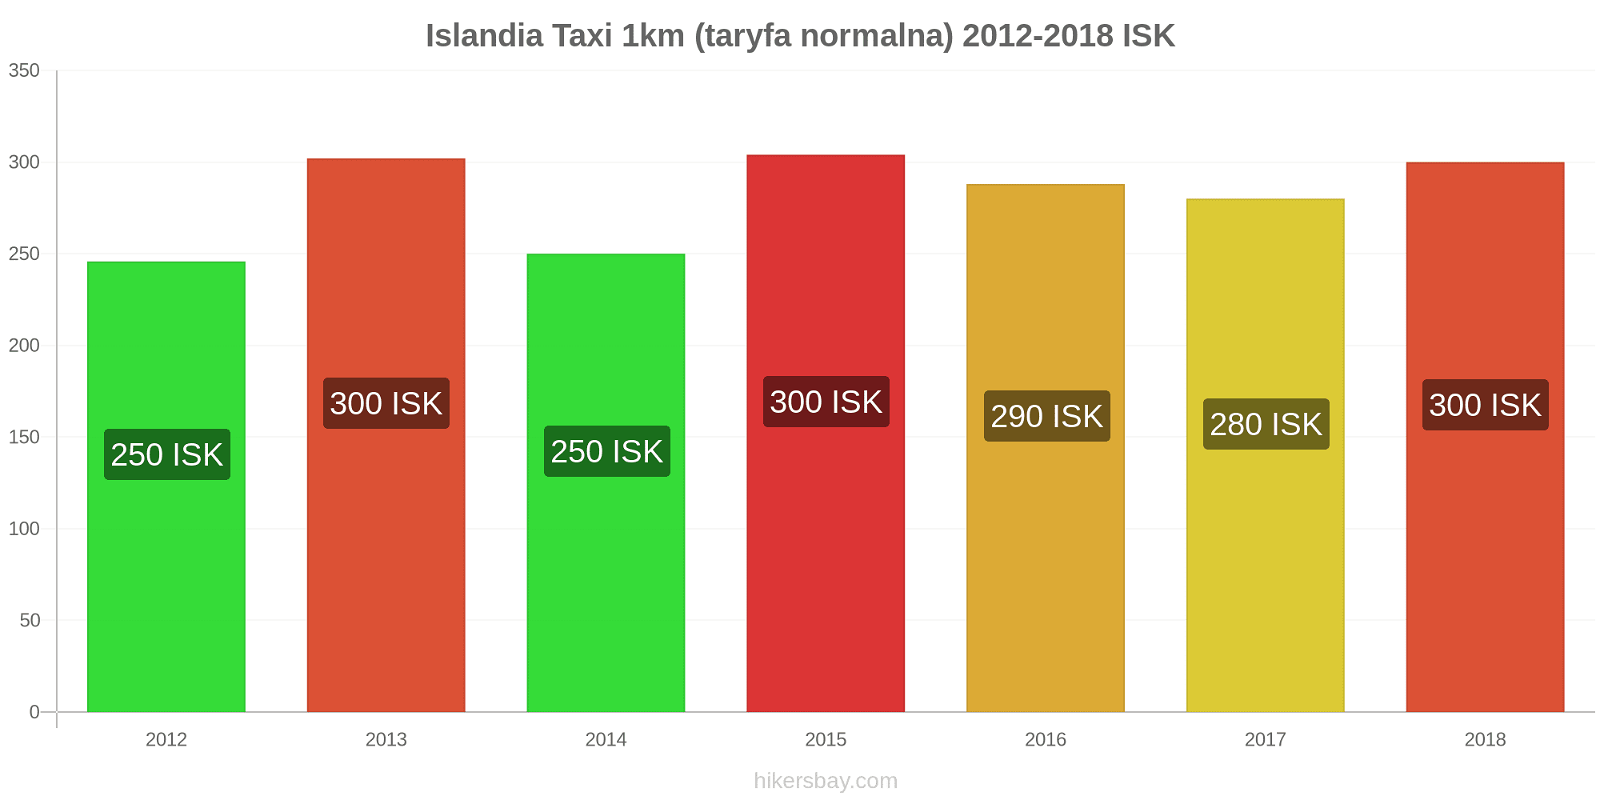 Islandia zmiany cen Taxi 1km (taryfa normalna) hikersbay.com